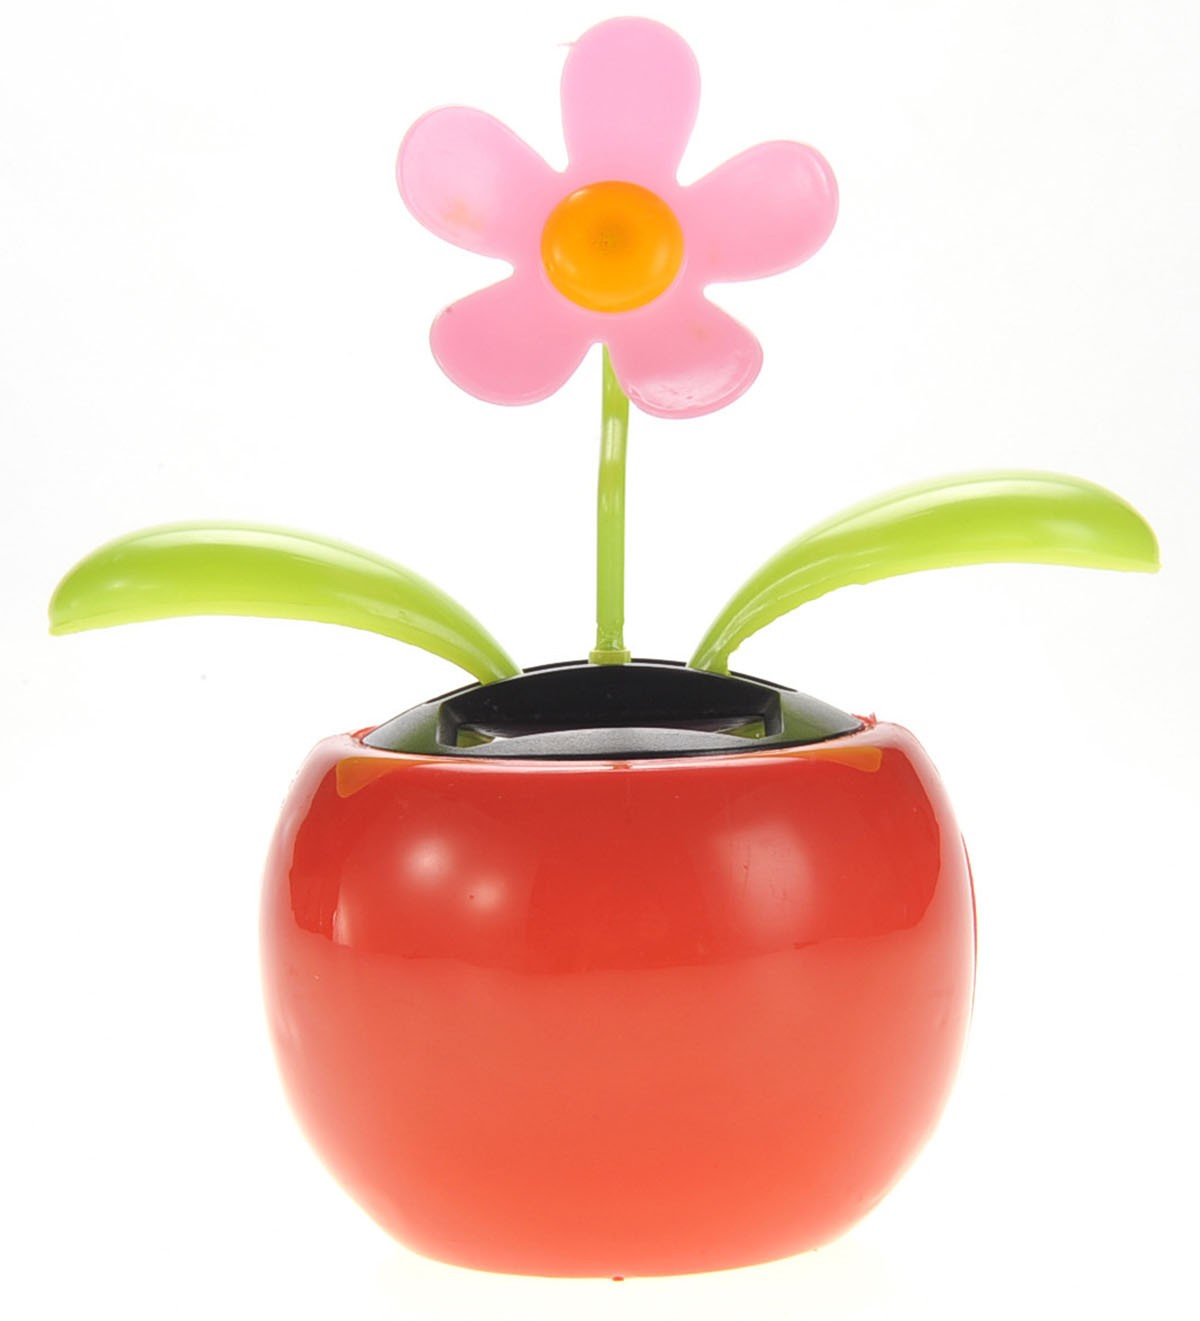 Solar Flower Toy (Pink)